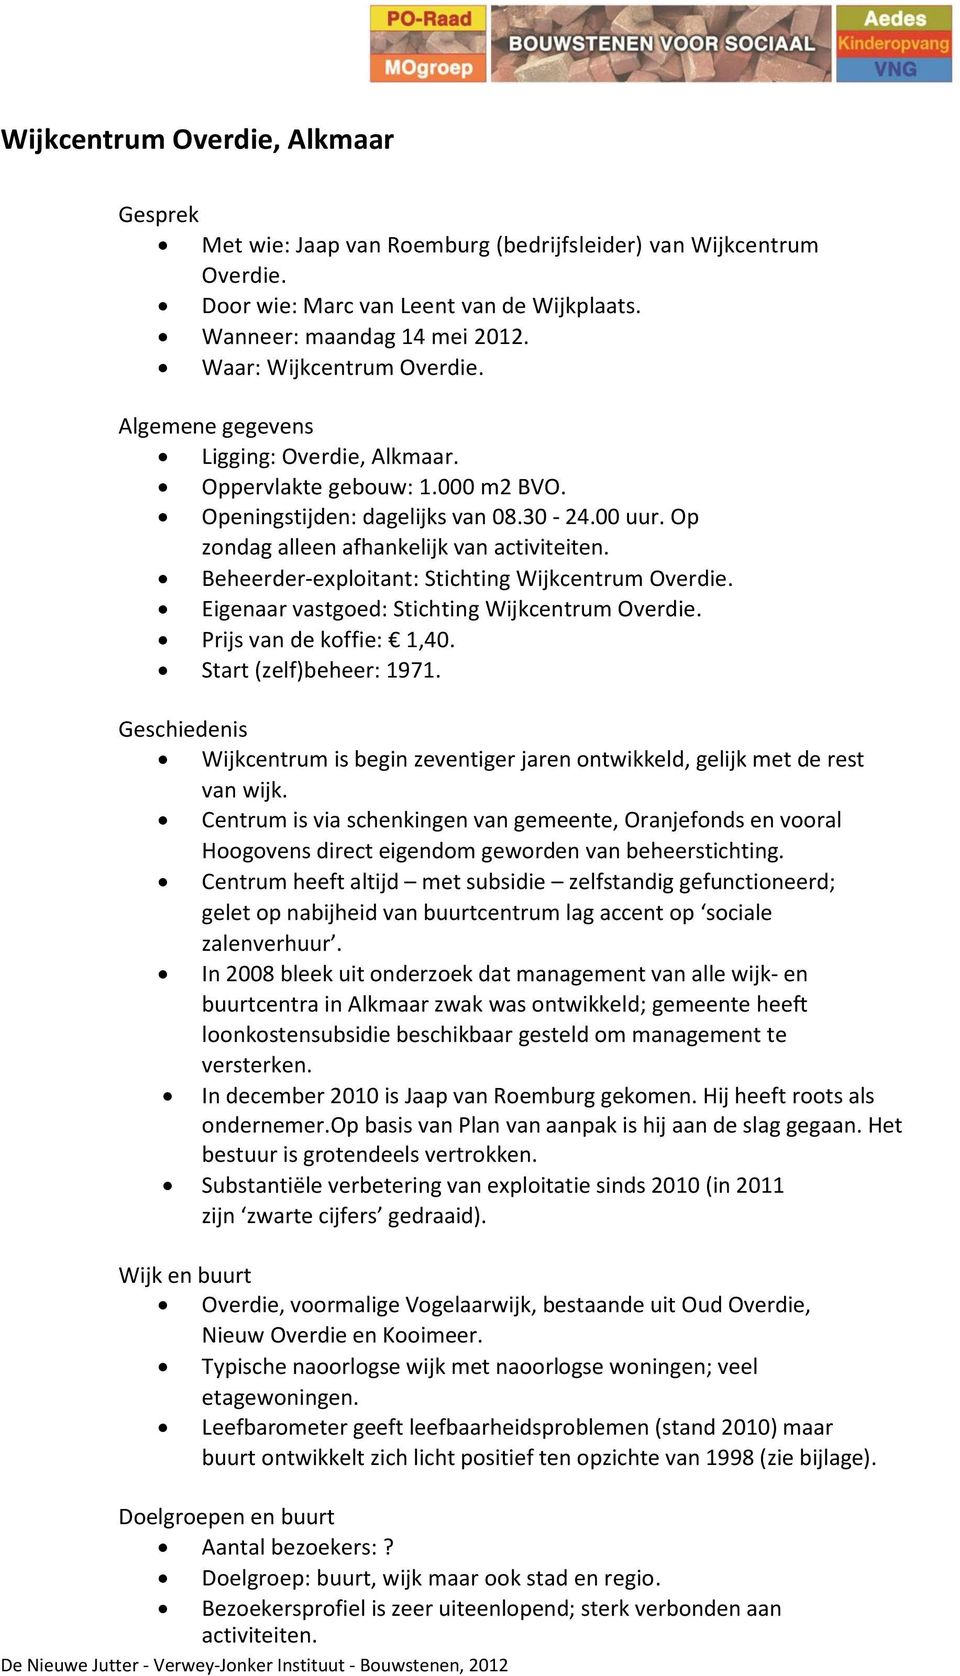 Beheerder-exploitant: Stichting Wijkcentrum Overdie. Eigenaar vastgoed: Stichting Wijkcentrum Overdie. Prijs van de koffie: 1,40. Start (zelf)beheer: 1971.